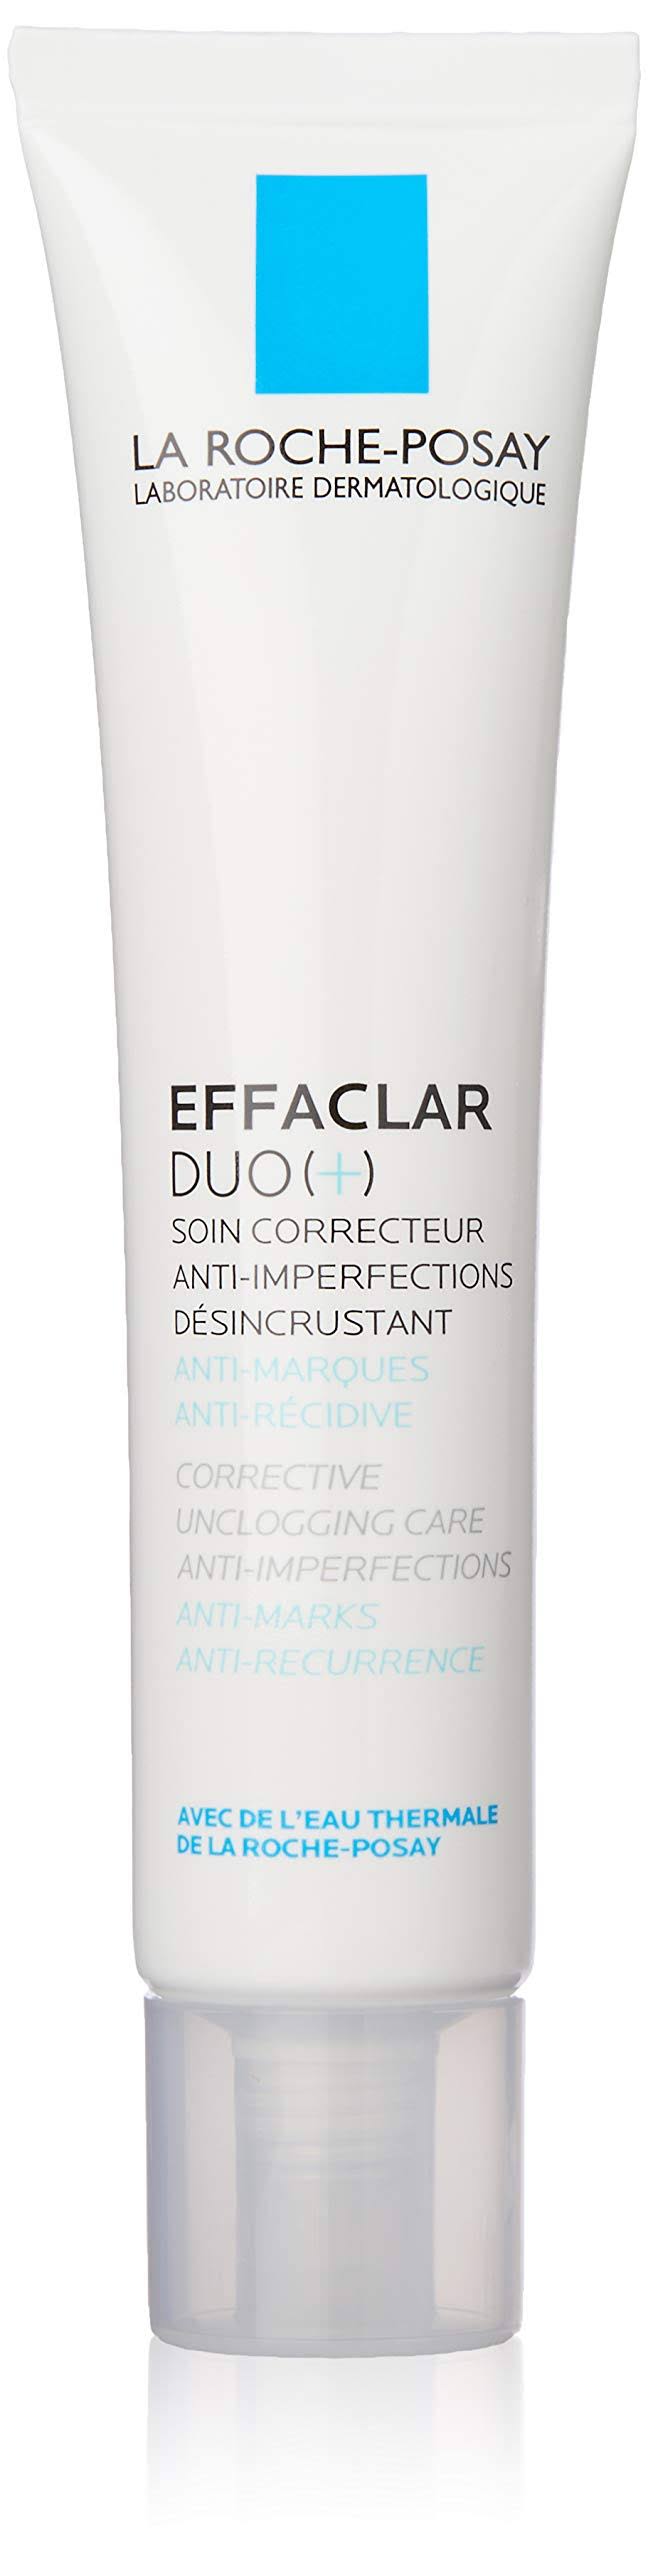 La Roche Posay Effaclar Duo Plus Anti Acne Cream - 40ml